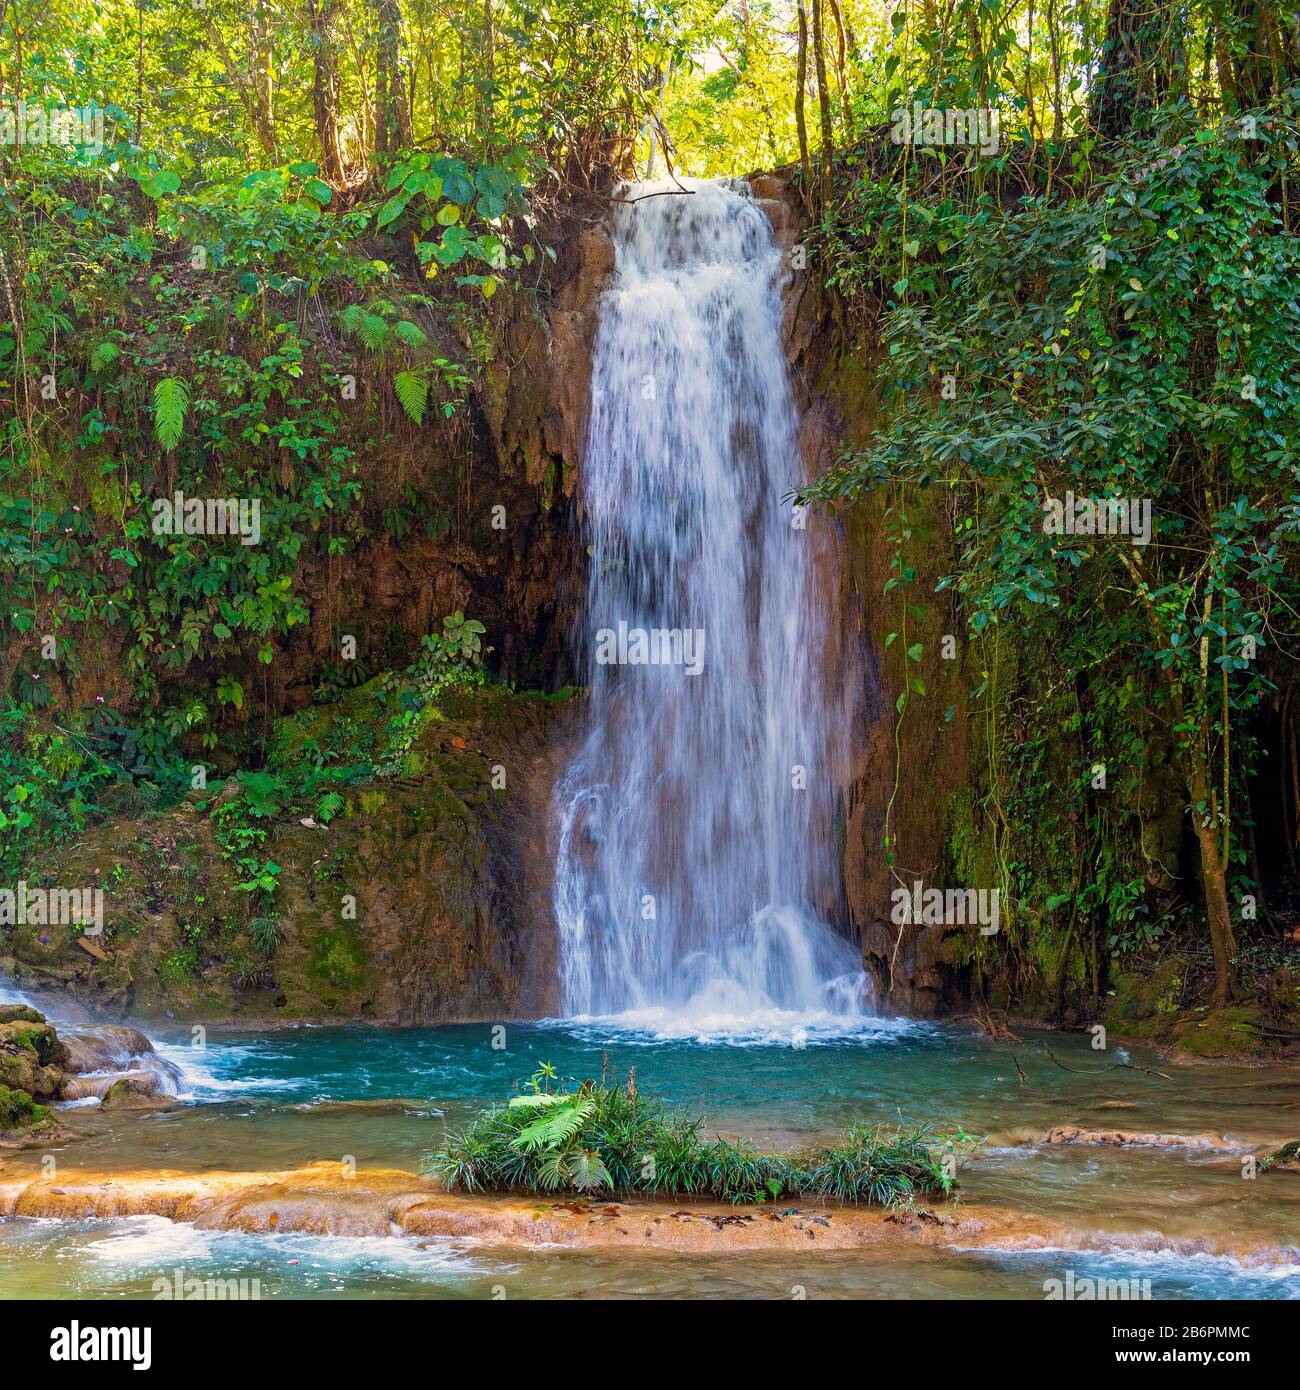 Photo carrée d'une chute d'eau dans les Cascades d'Agua Azul dans la forêt tropicale de Chiapas près de Palenque, au Mexique. Banque D'Images